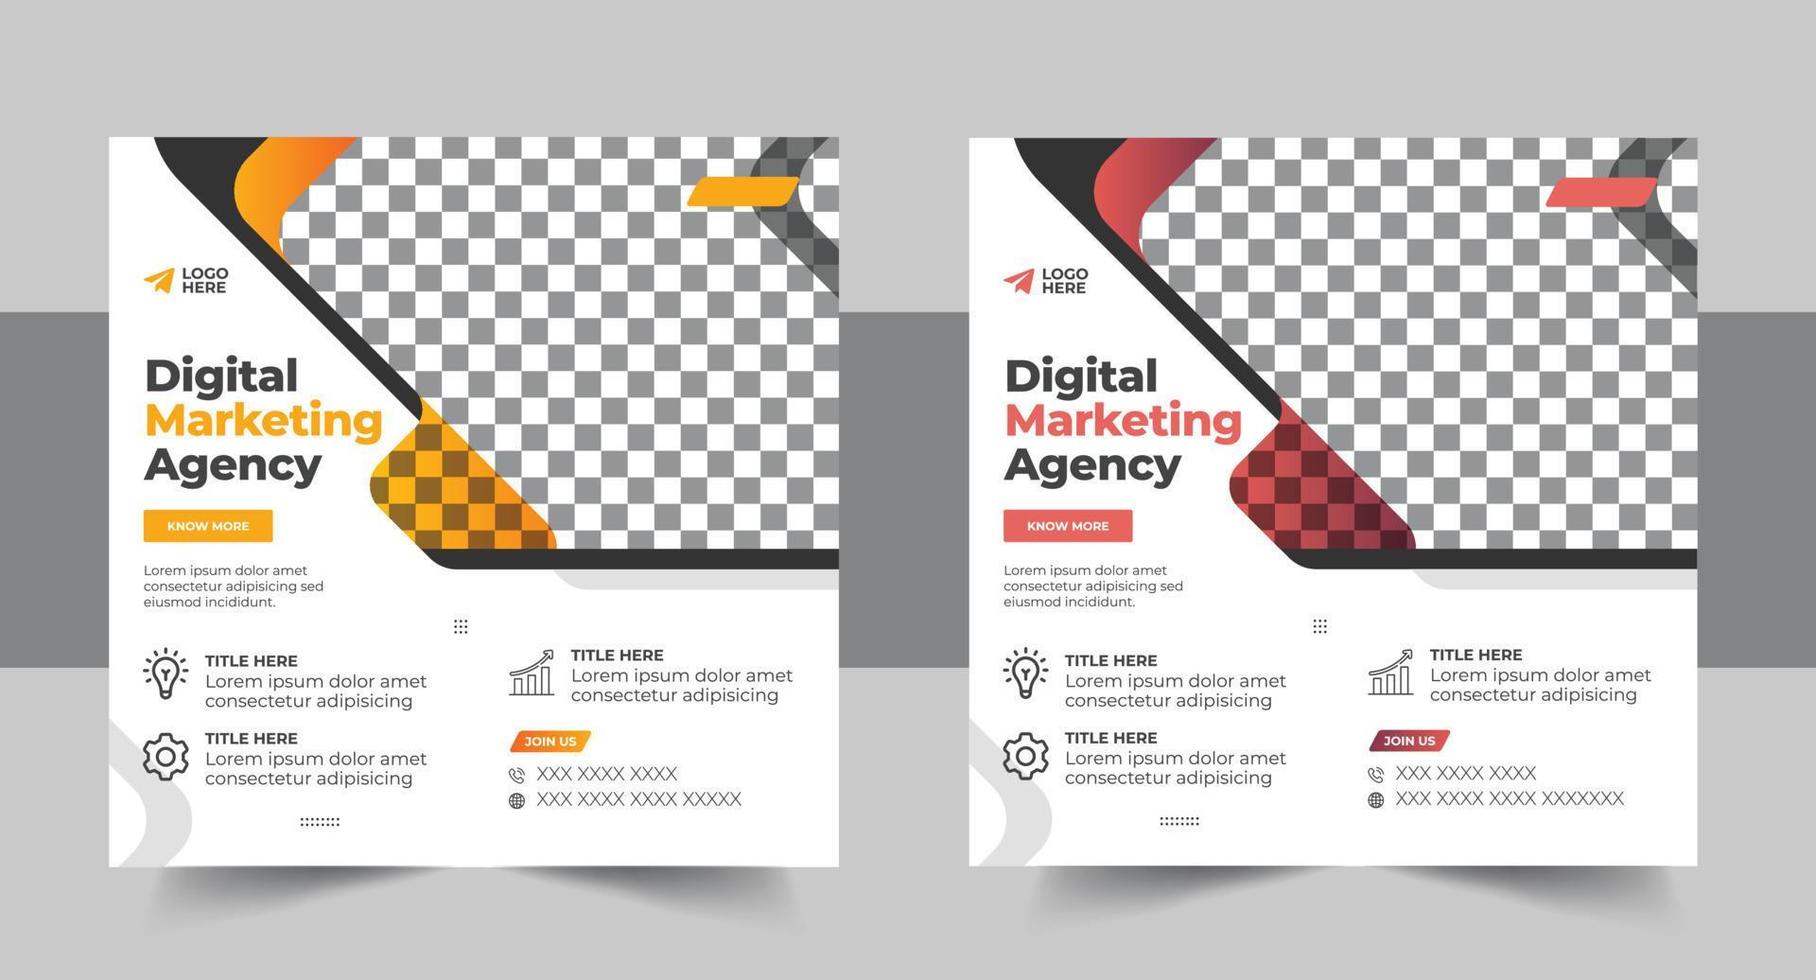 digital márketing agencia social medios de comunicación enviar modelo corporativo negocio social medios de comunicación web bandera vector